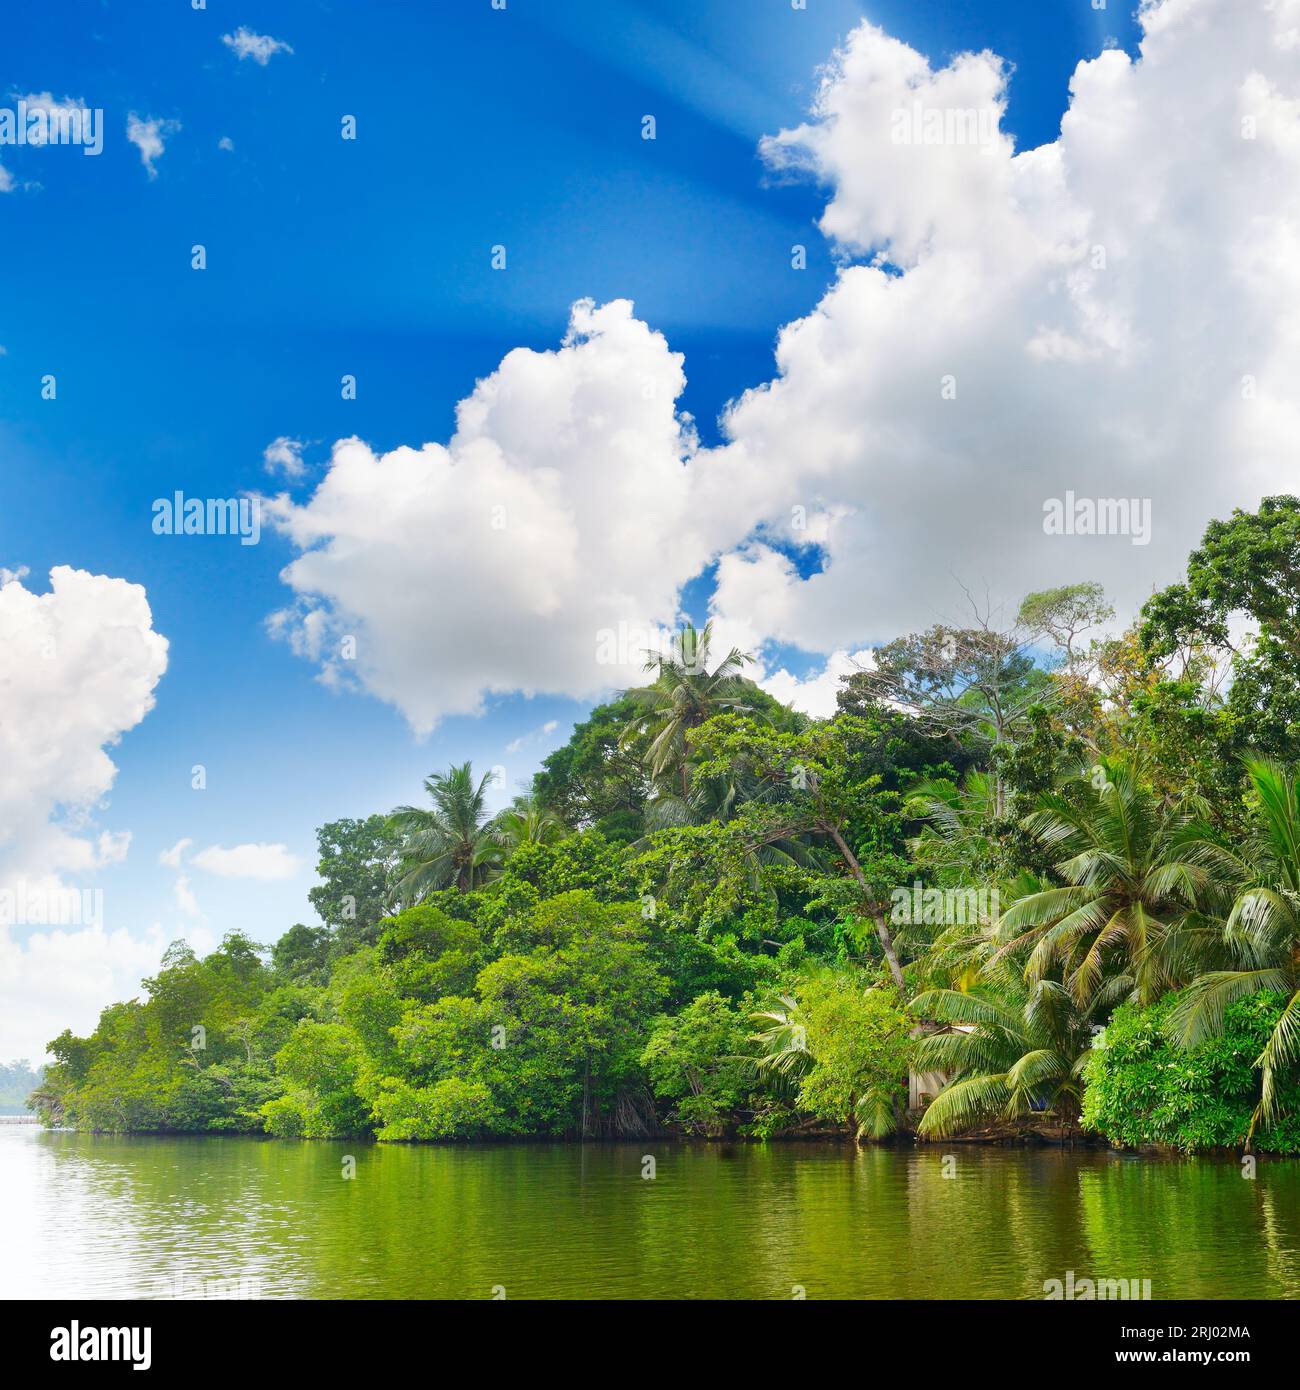 Lake dans la jungle et ciel bleu Banque D'Images